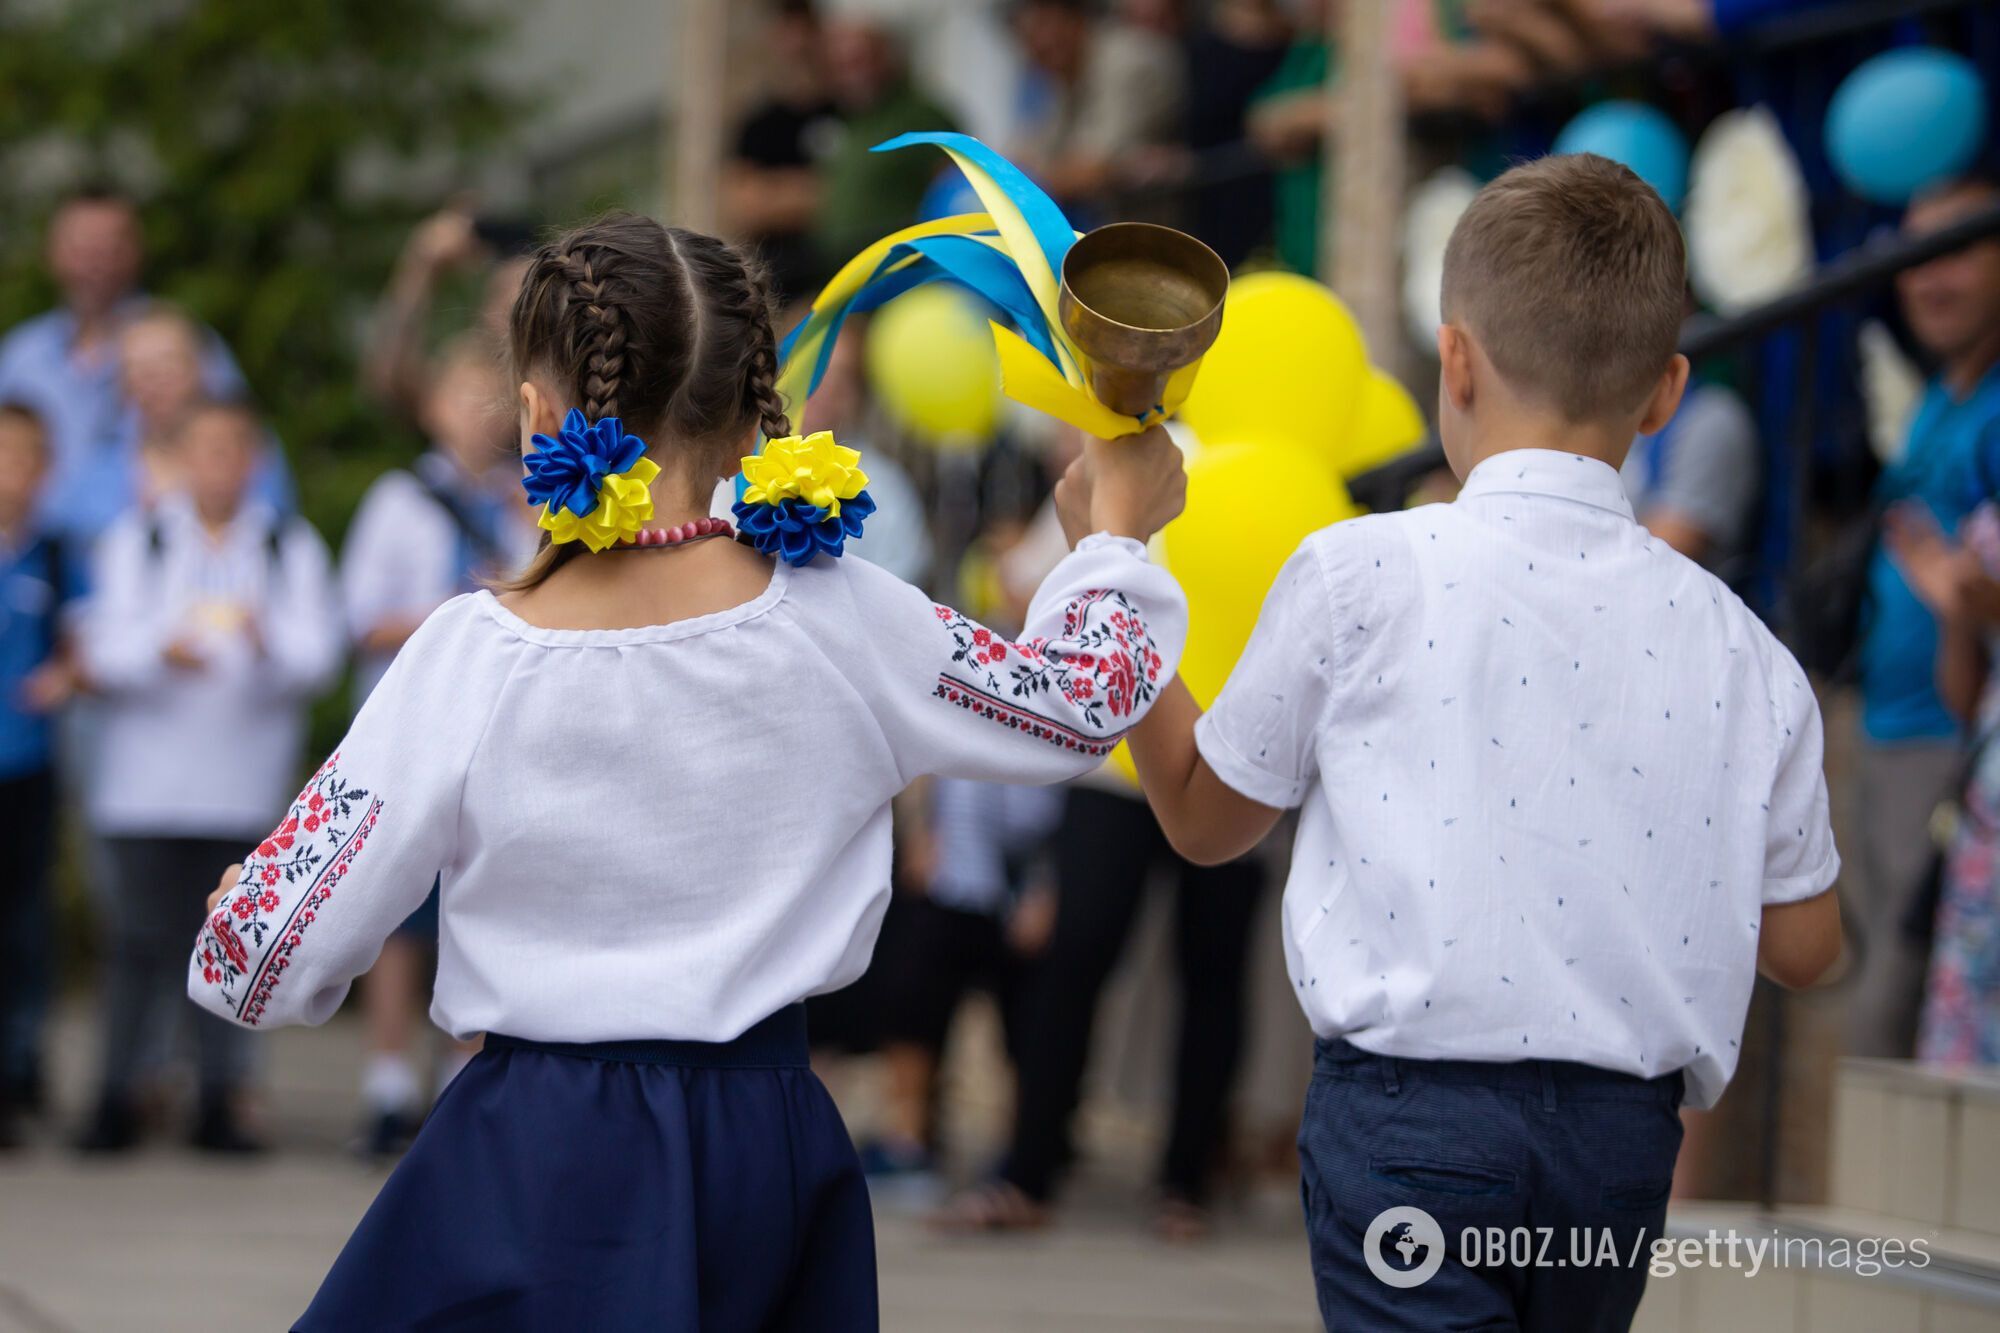 Запорожье уйдет на каникулы позднее всех: когда последний звонок в школах Украины. Даты по регионам